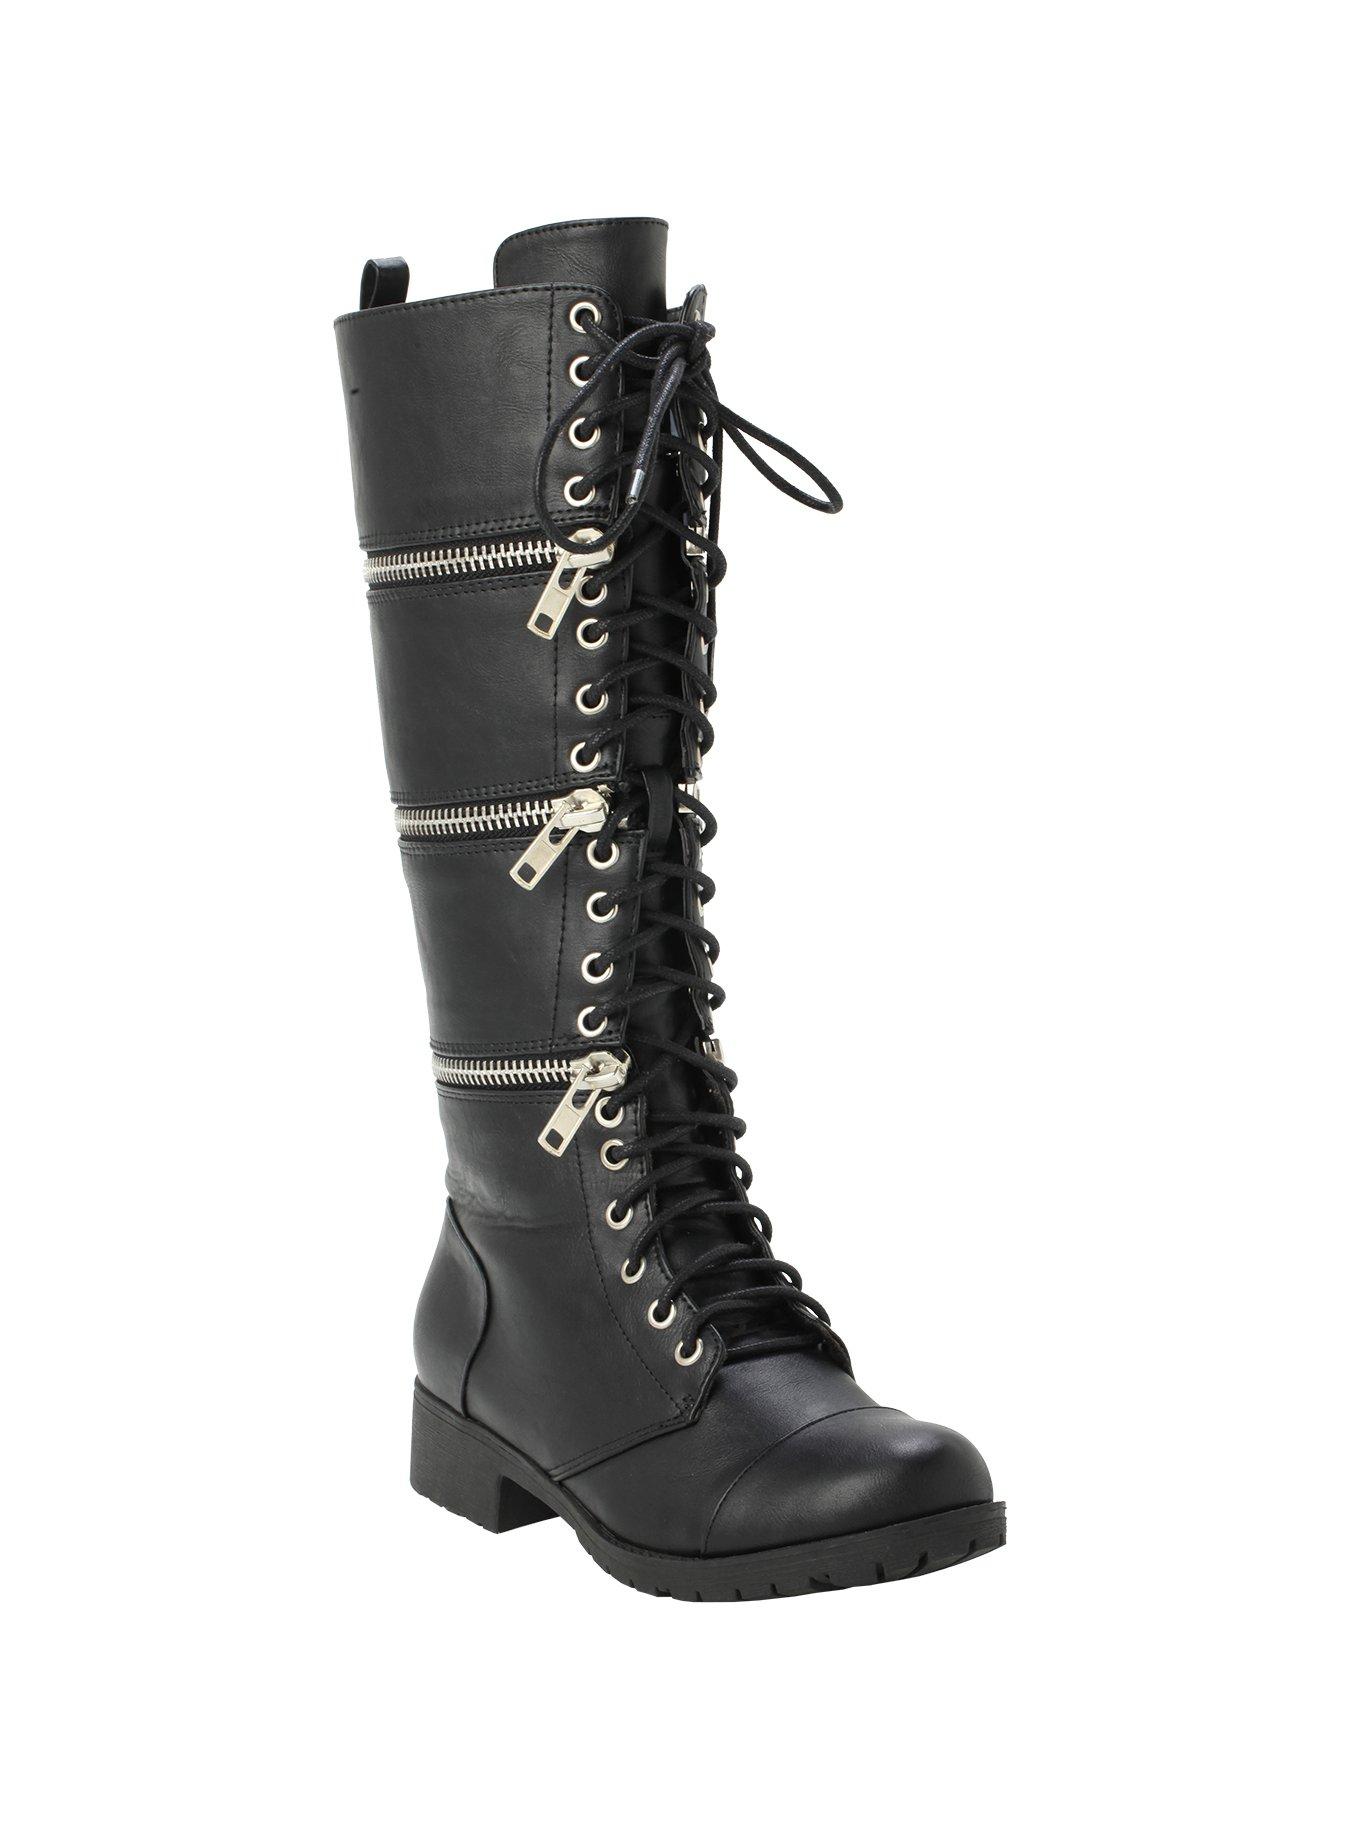 Black Zip-Off Boots, BLACK, hi-res